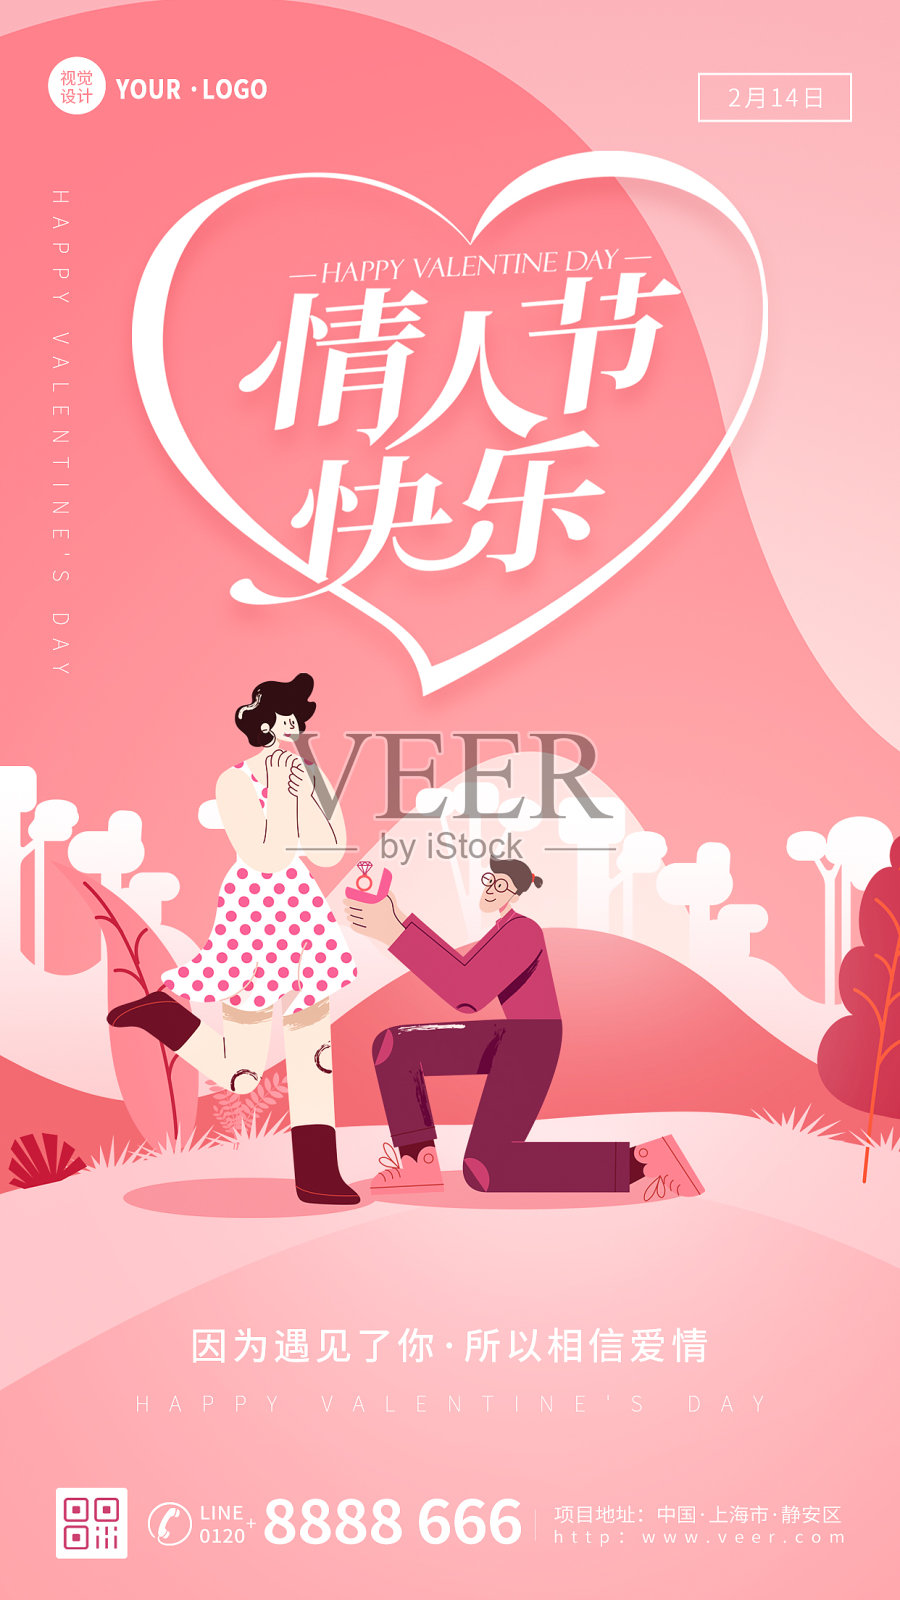 粉色扁平大气情侣情人节节日祝福宣传手机海报设计模板素材